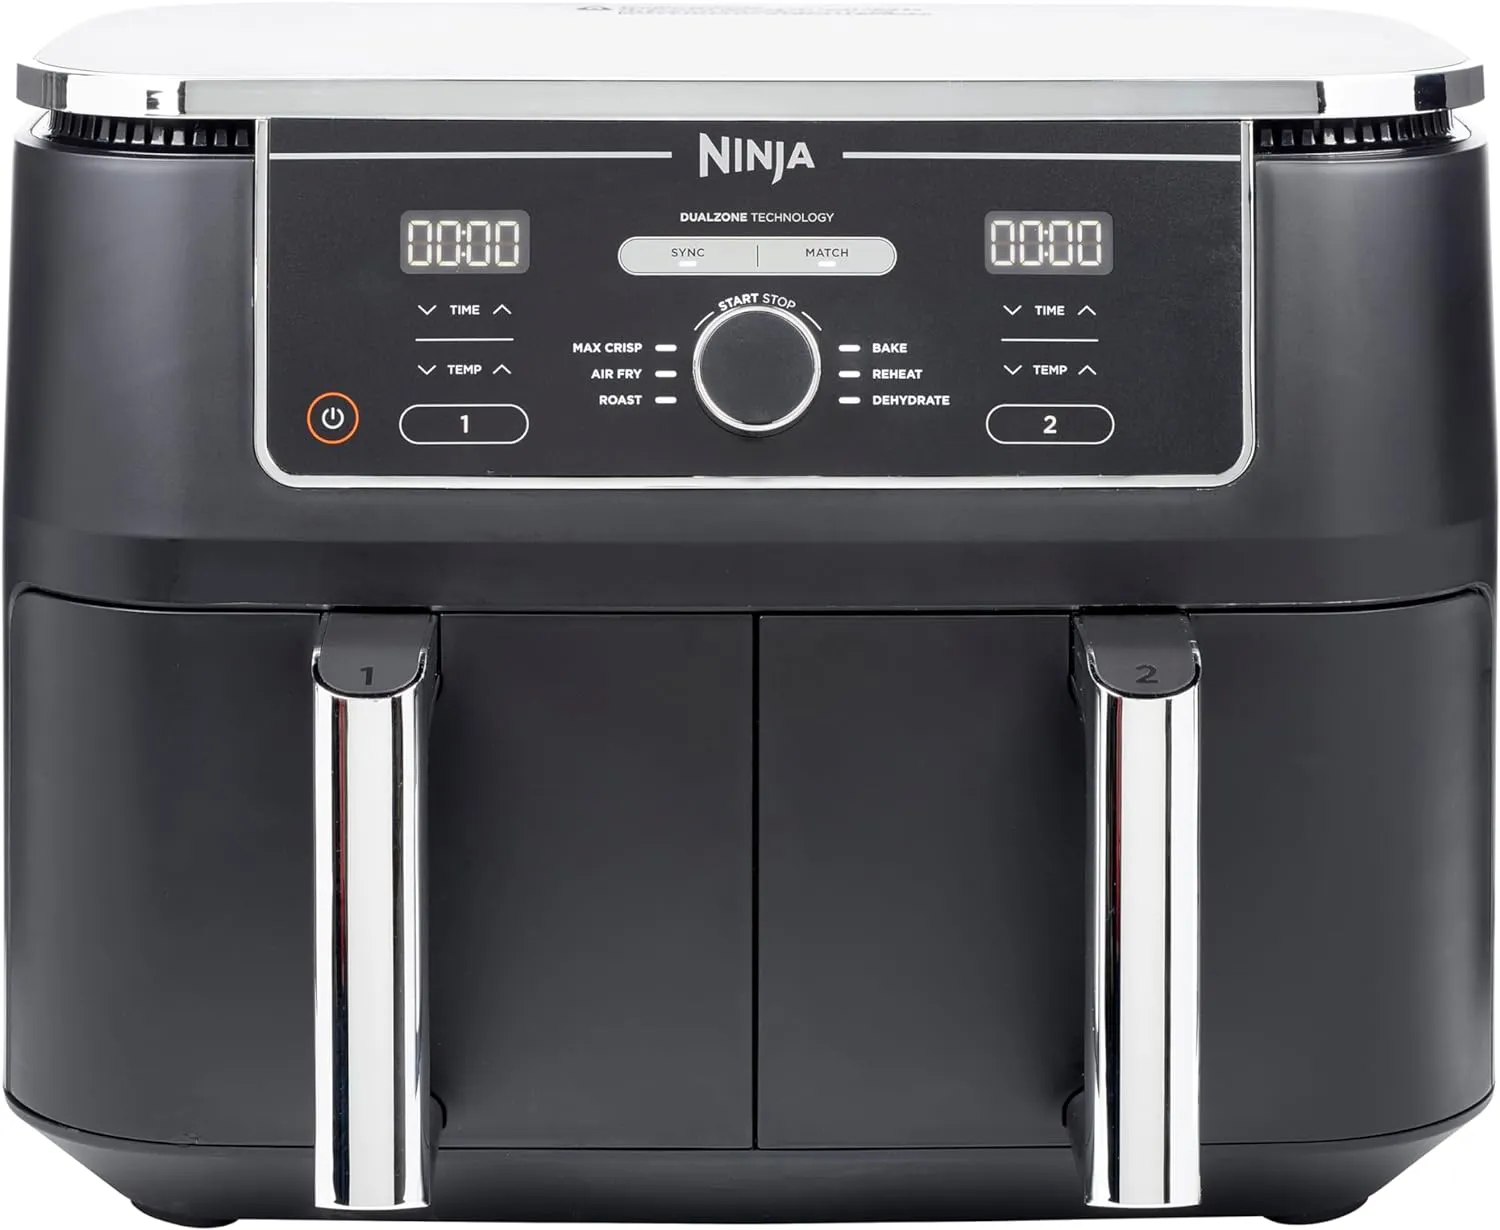 Ninja Foodi MAX Friggitrice ad aria digitale a doppia zona, 2 cassetti, 9,5 l, 6 in 1, senza olio, frittura ad aria, Max Crisp, arrostire, cuocere al forno, riscaldare, disidratare, cuocere 8 porzioni, cestelli antiaderenti lavabili in lavastoviglie